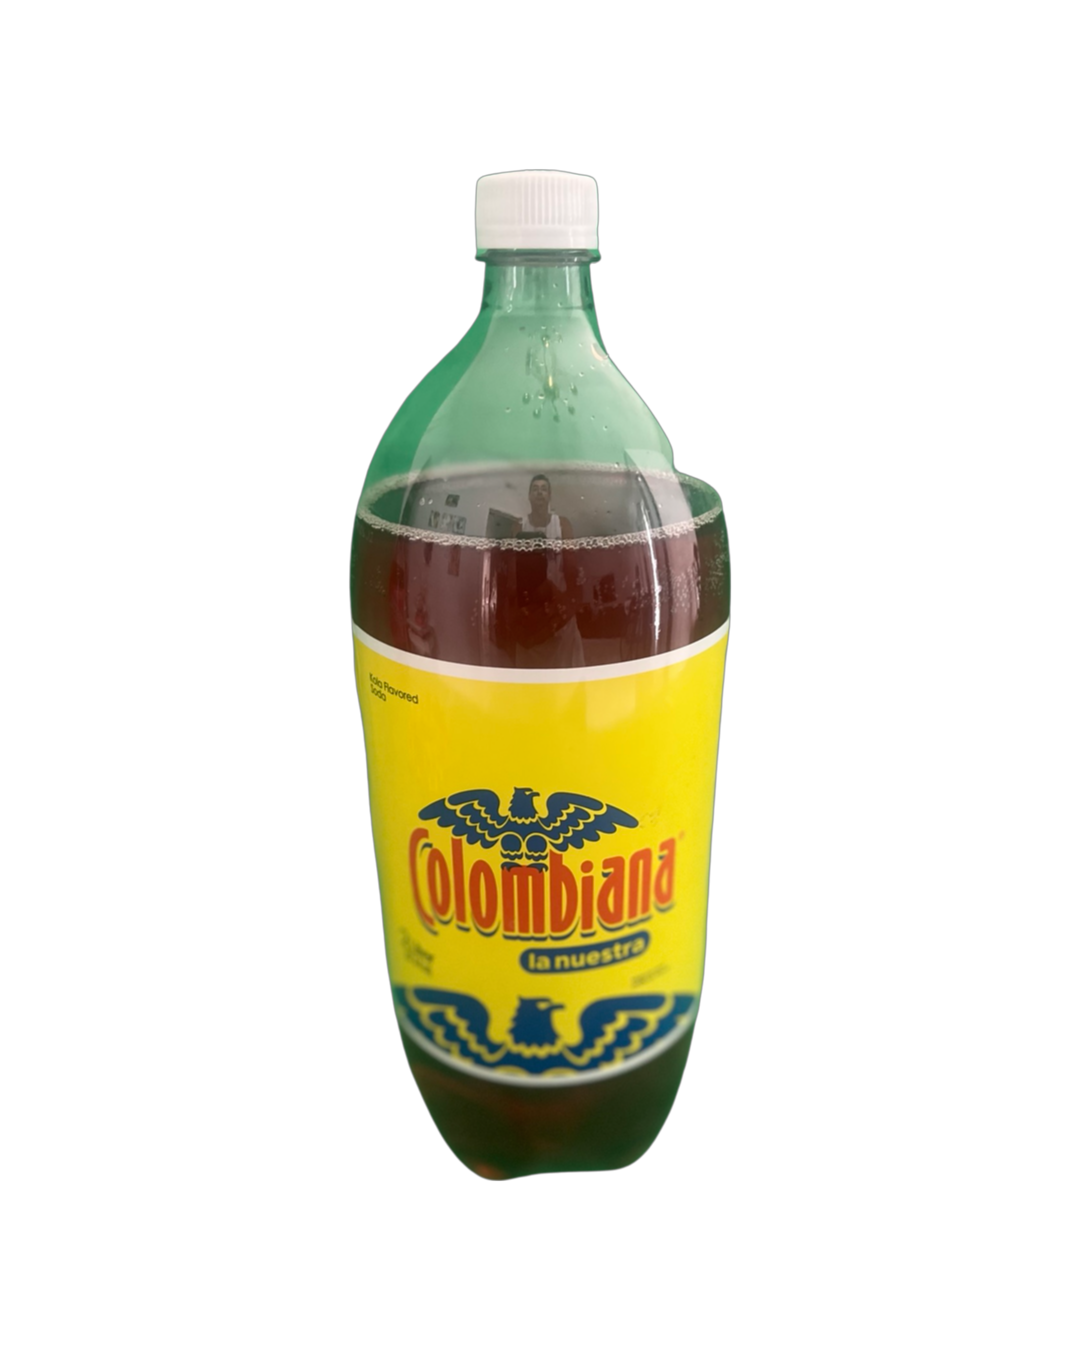 colombiana soda